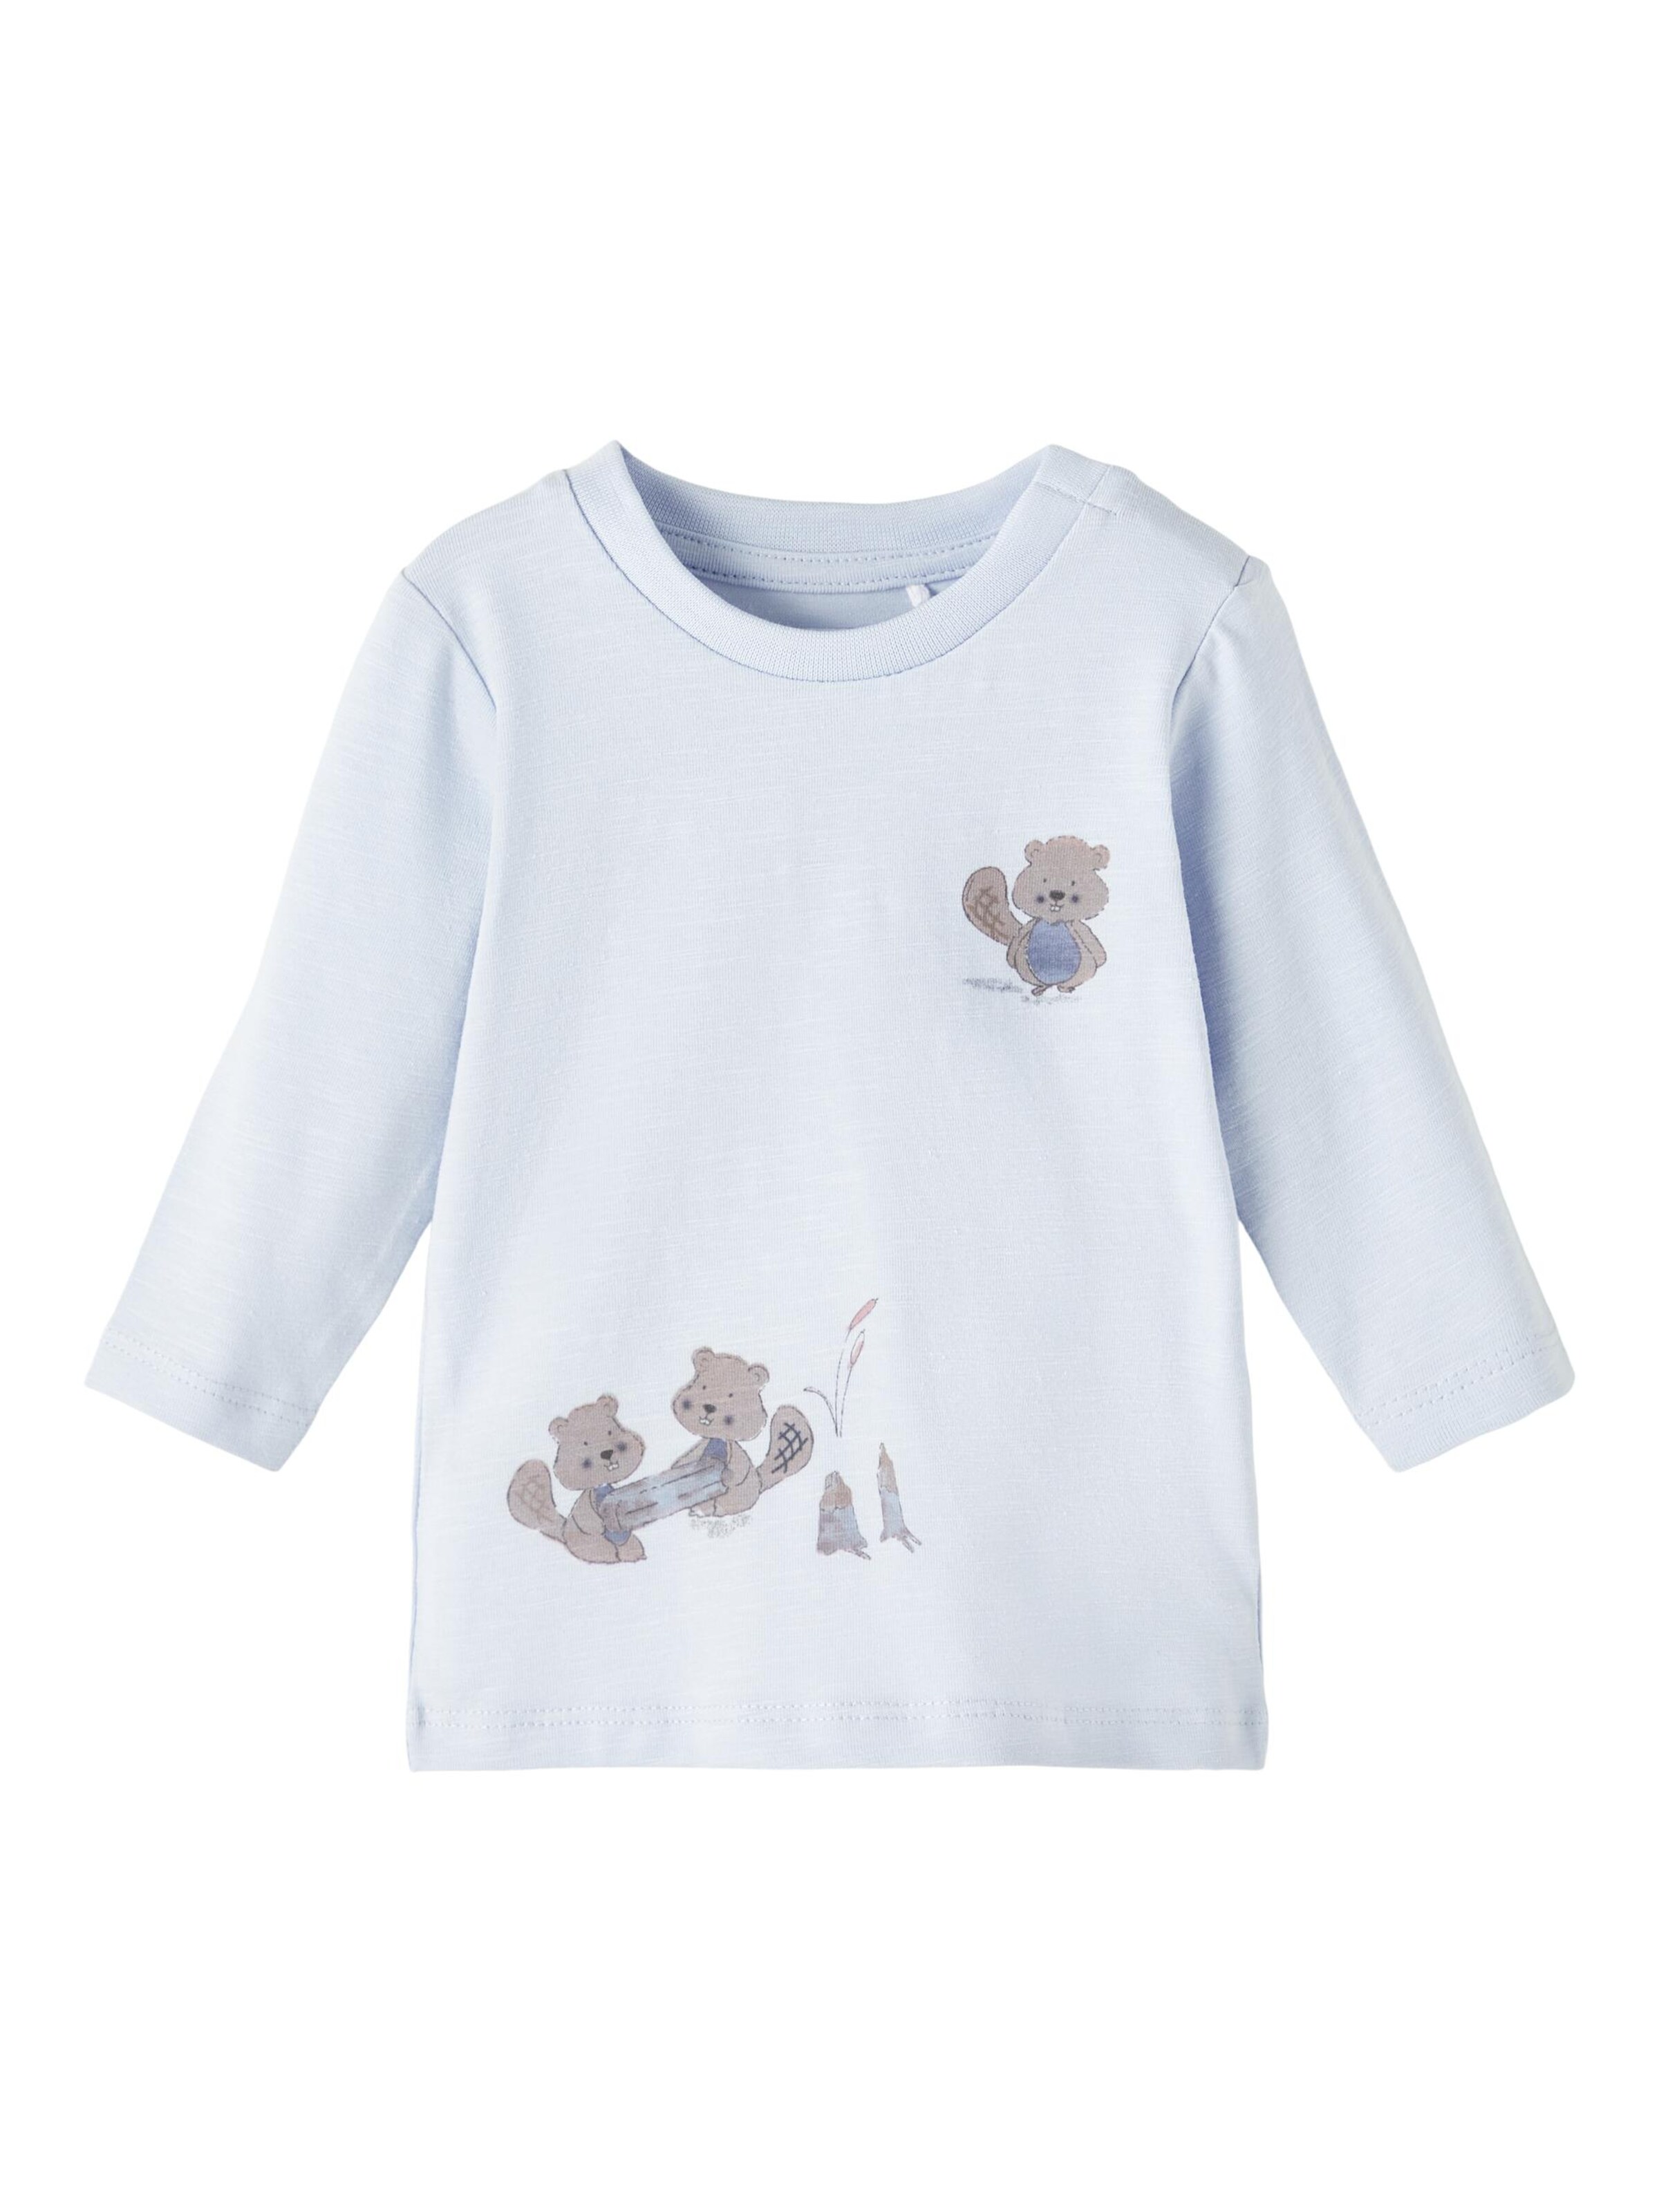 Kinder Bekleidung NAME IT Shirt 'Didrik' in Hellblau, Blaumeliert - BX34252